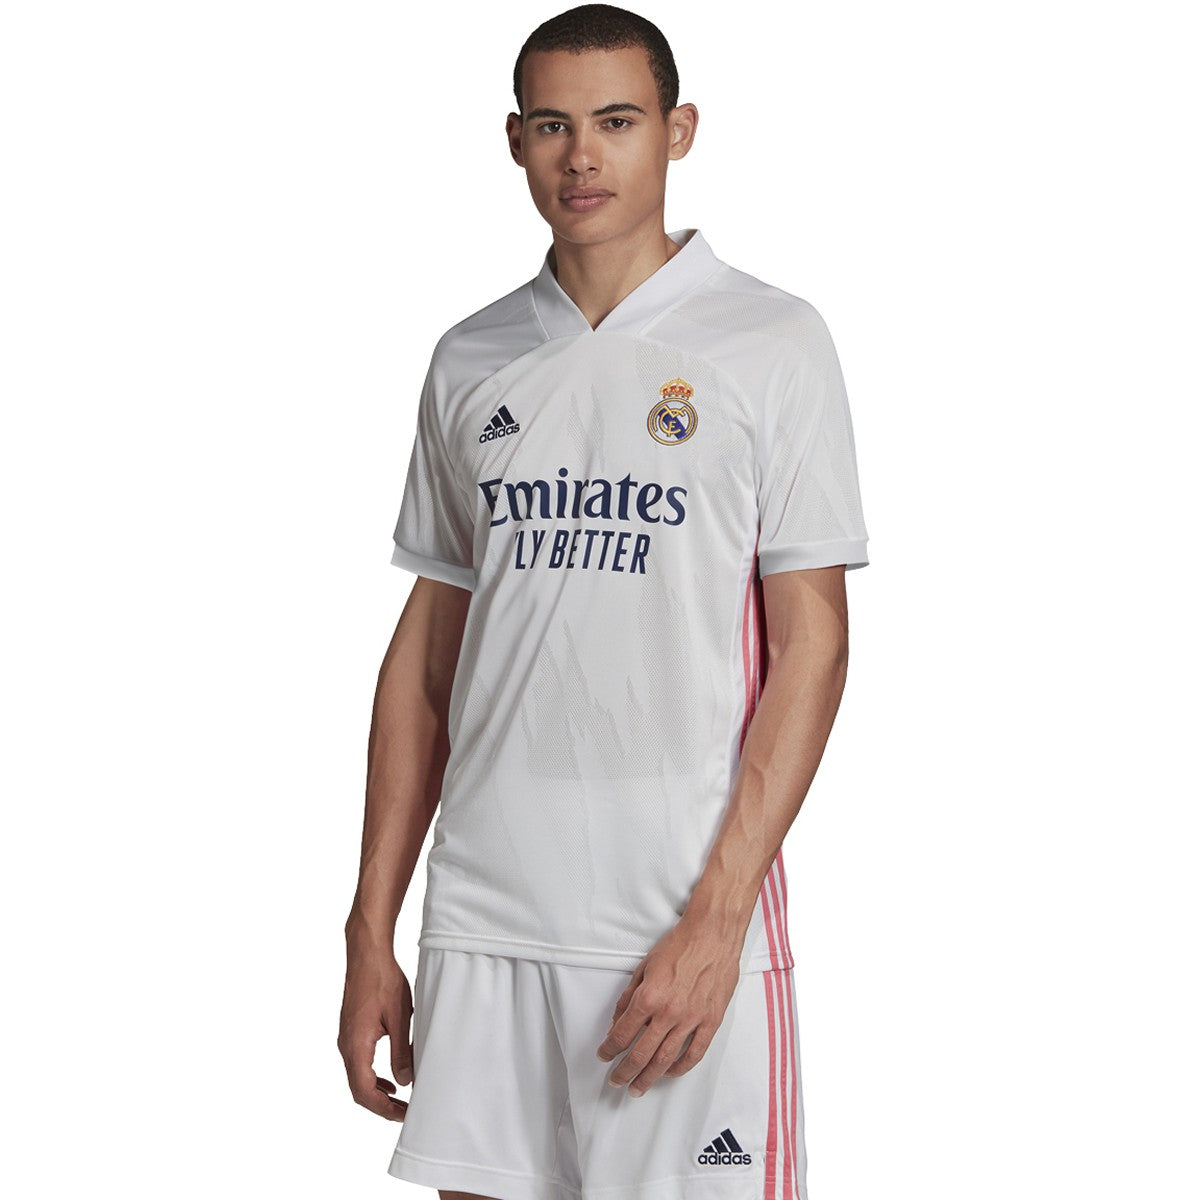 Camiseta adidas Real Madrid 2021 2022 authentic  Equipacion real madrid,  Adidas real madrid, Adidas